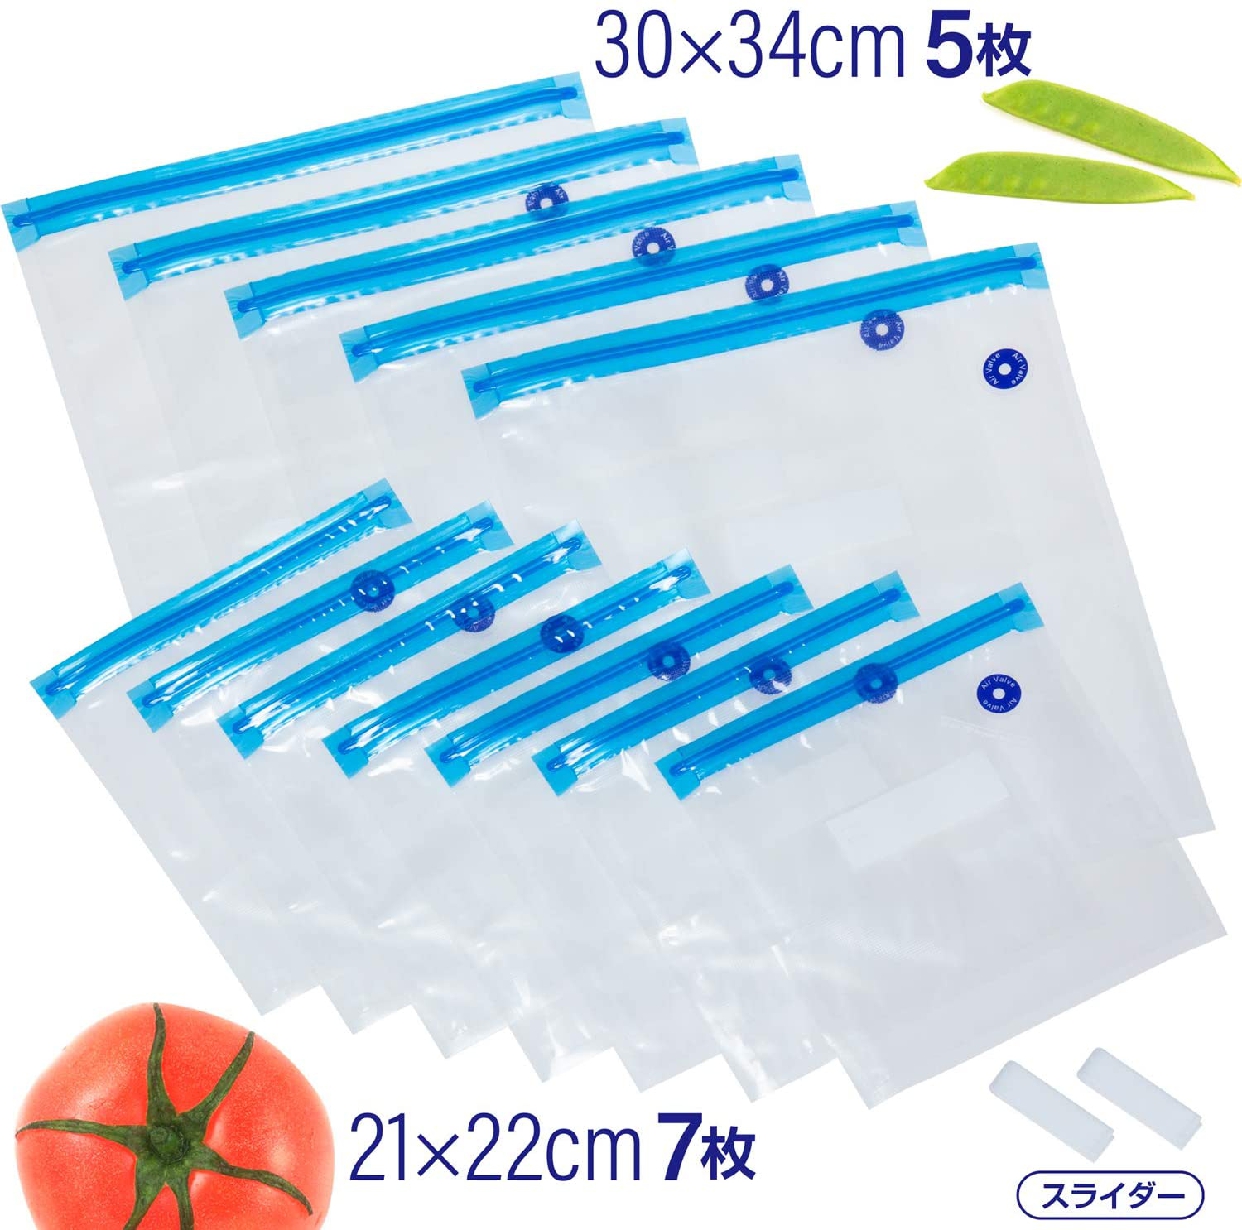 ASTRO(アストロ) 真空保存袋 食品用 623-32の商品画像4 